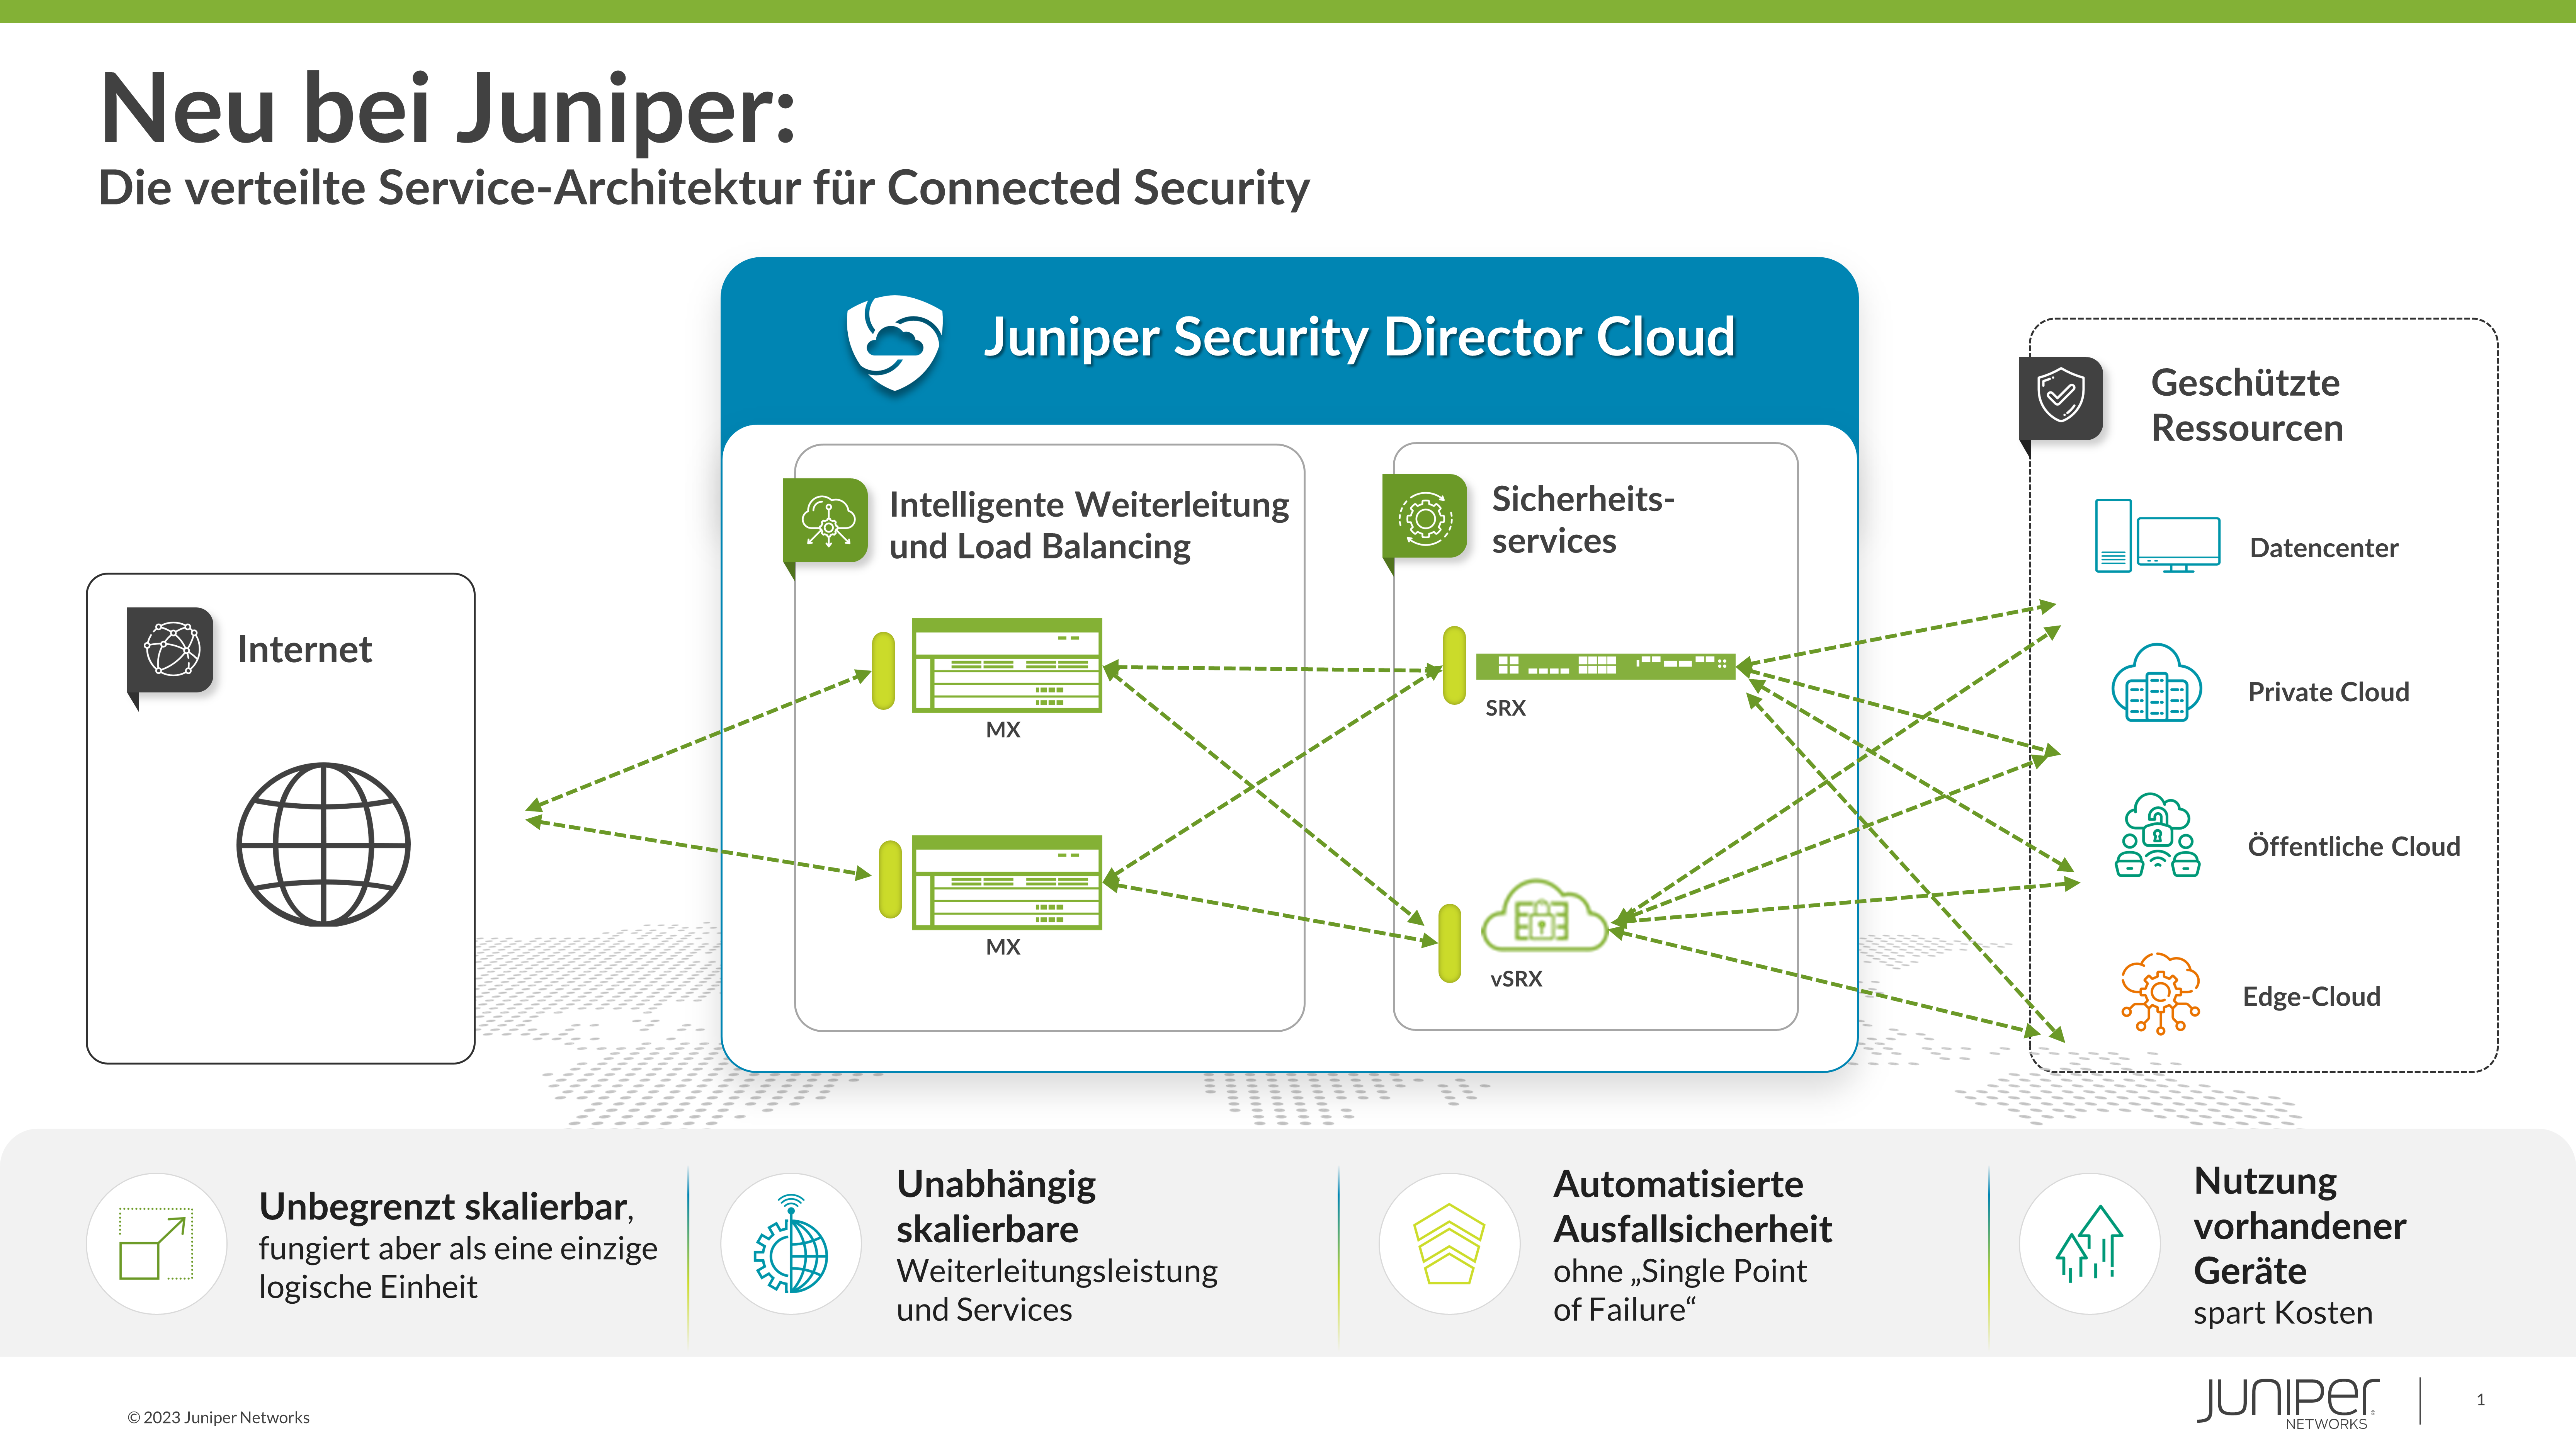 Mit der branchenweit ersten Architektur für verteilte Sicherheitsservices baut Juniper Networks die Sicherheit im modernen Datencenter aus